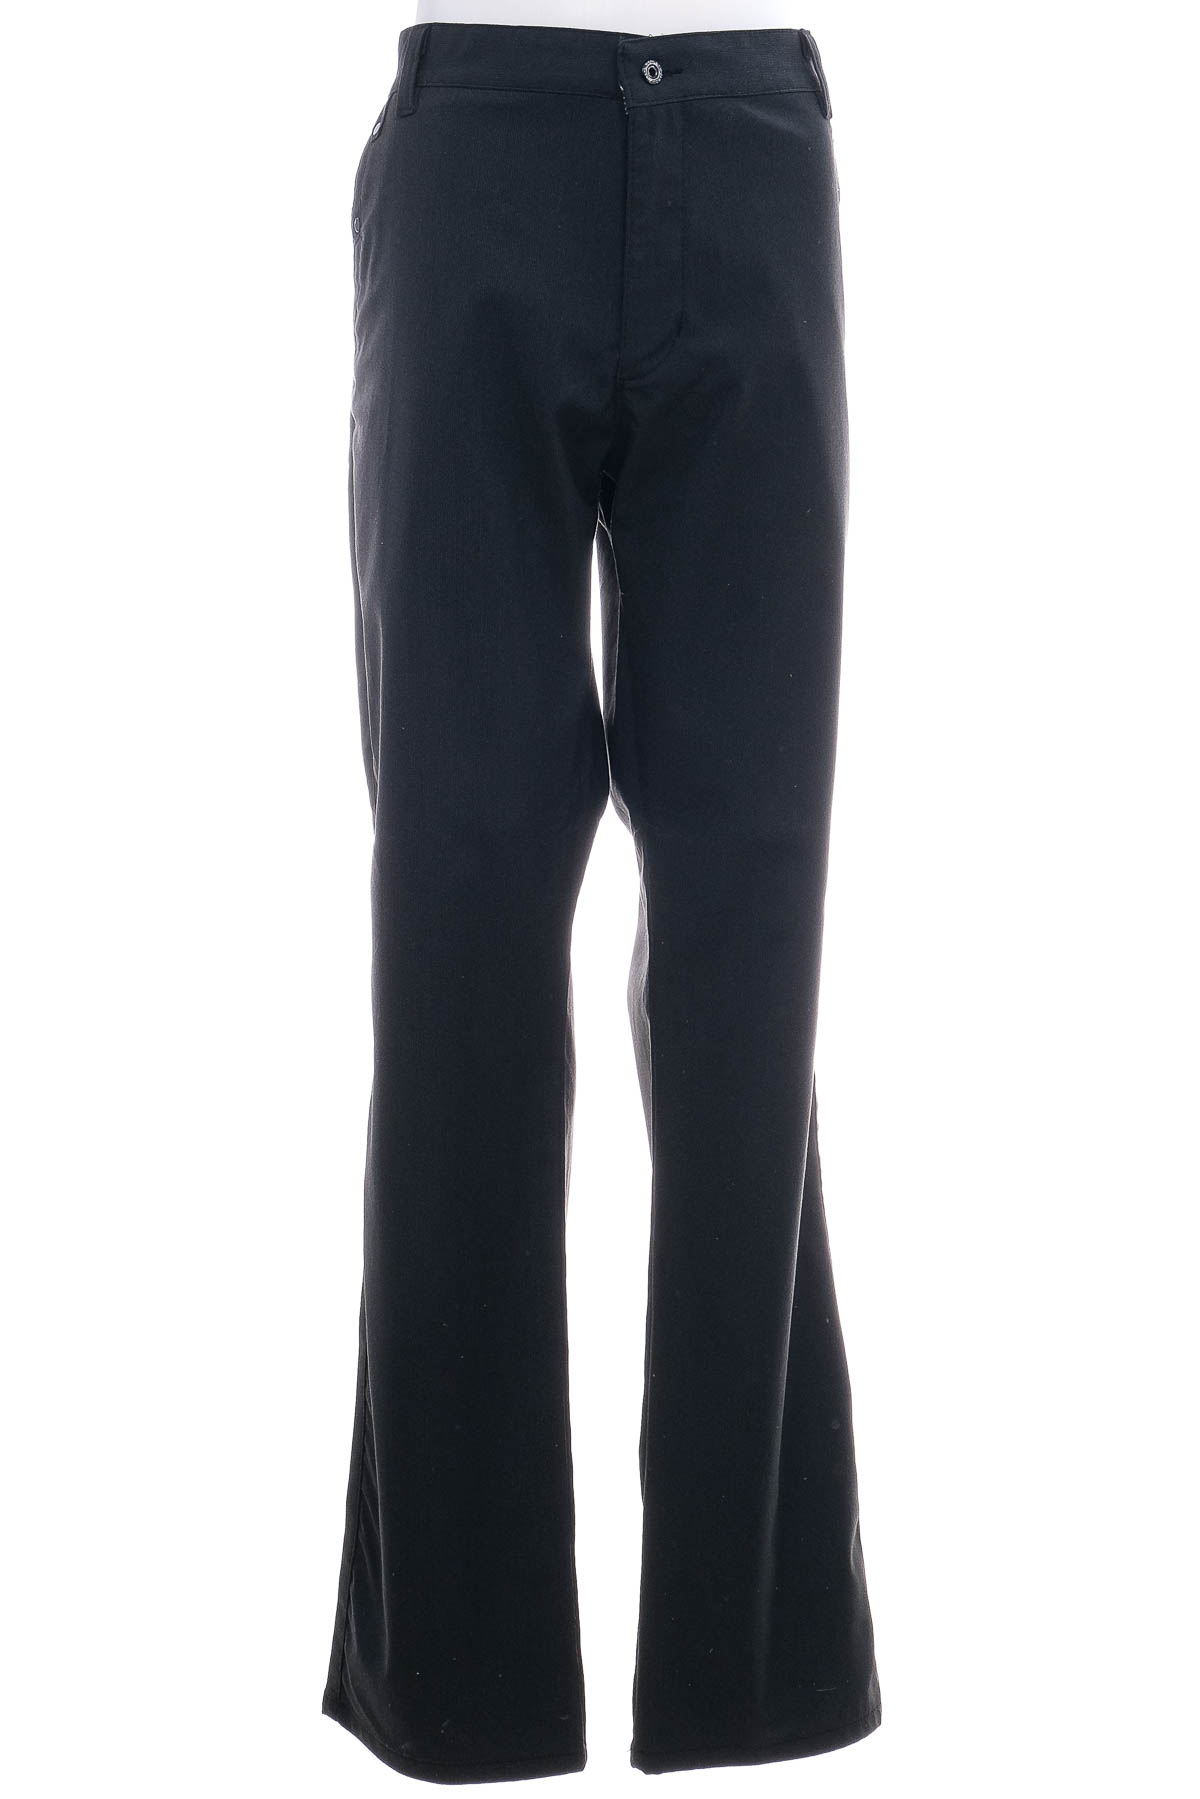 Pantalon pentru bărbați - New Jarsin - 0